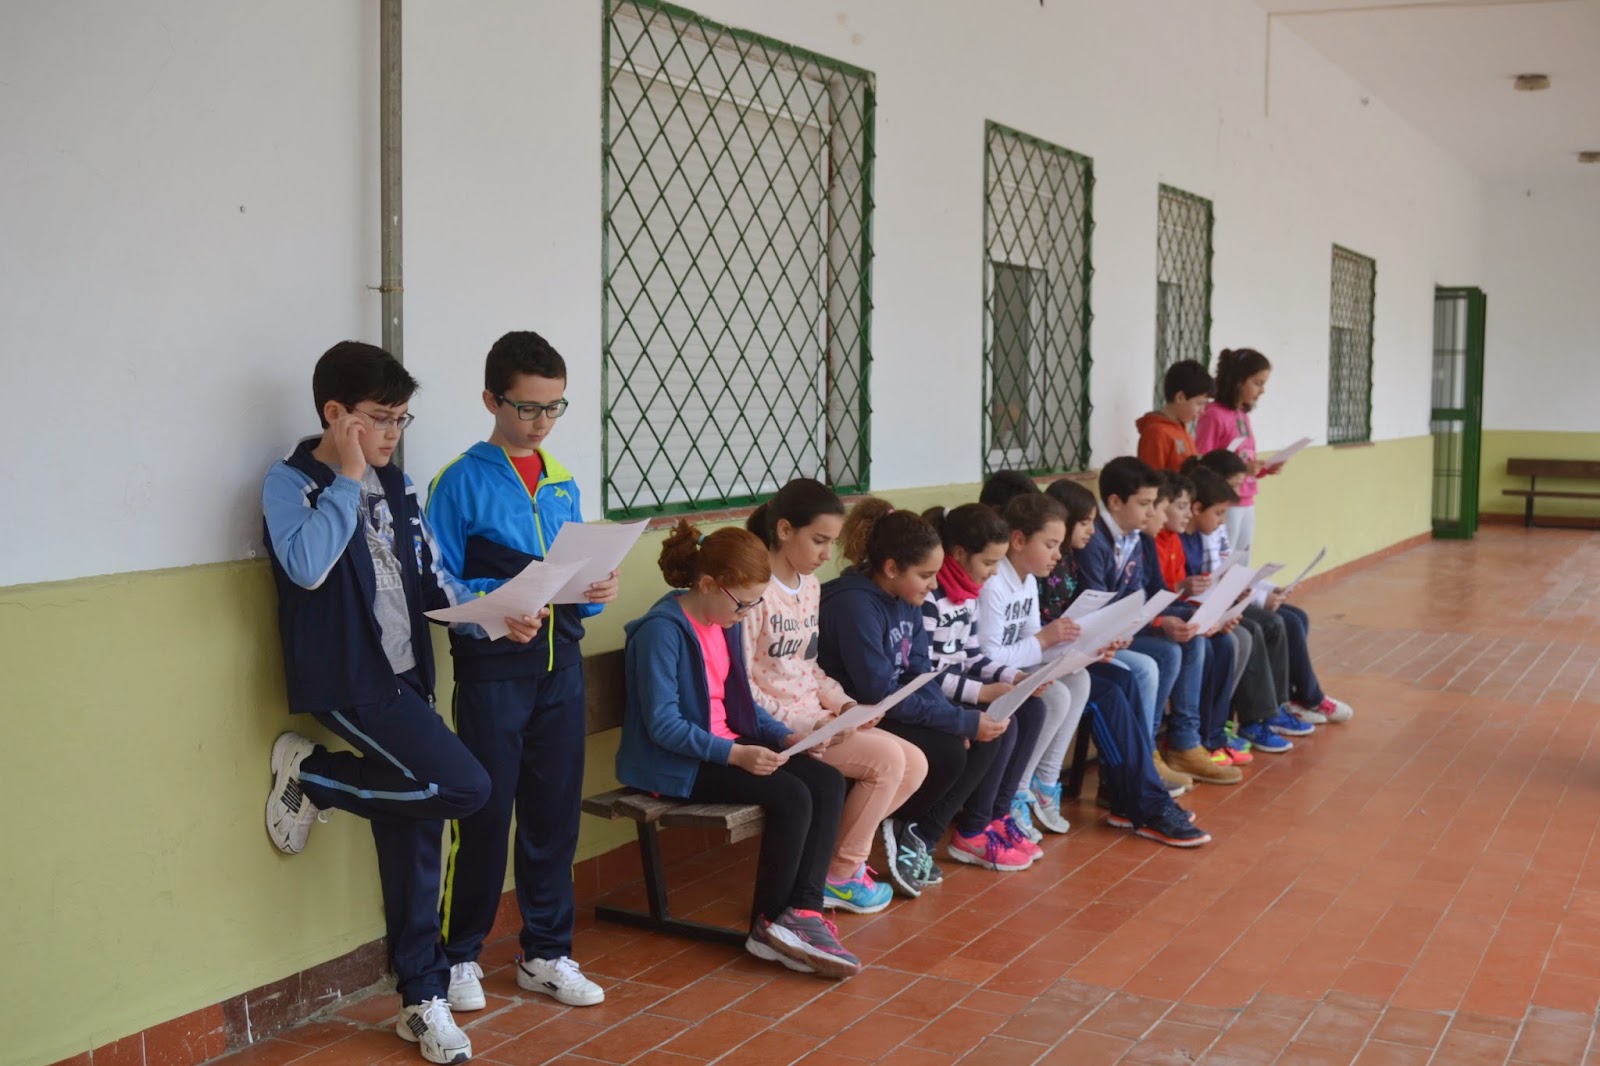 Más de 160 alumnos de 5º y 6º participan en la 1ª fase del Concurso Regional de Lectura en Público 2014-15